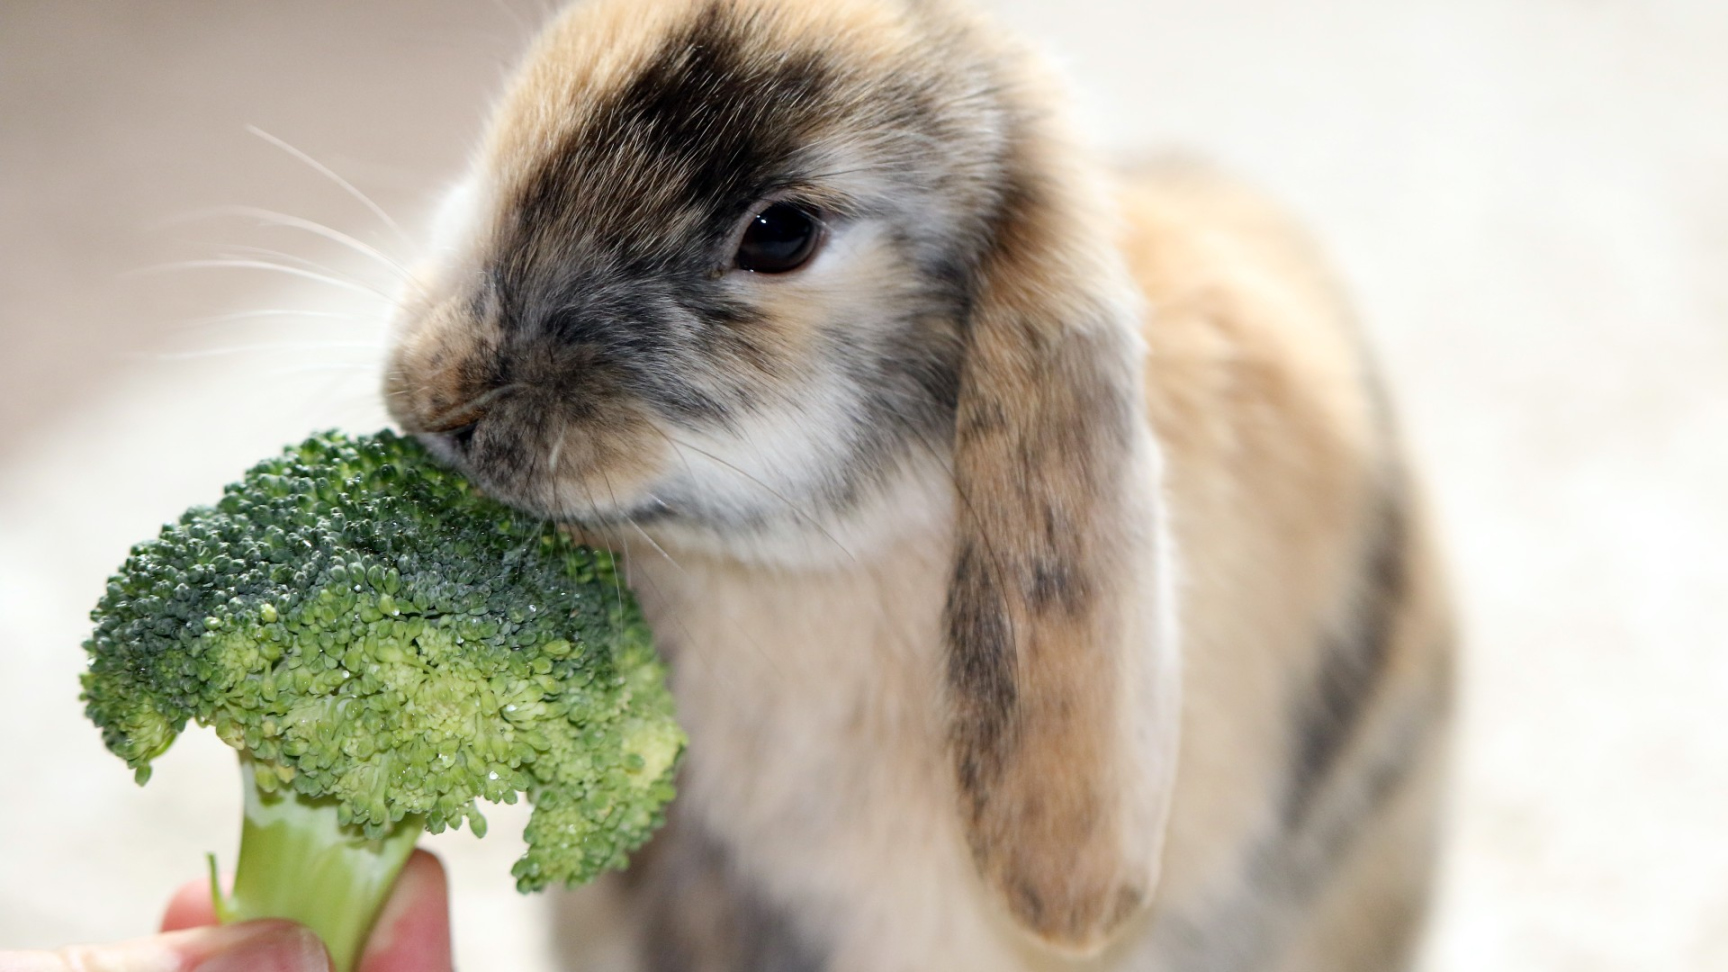 Can rabbits eat broccoli? PetsRadar